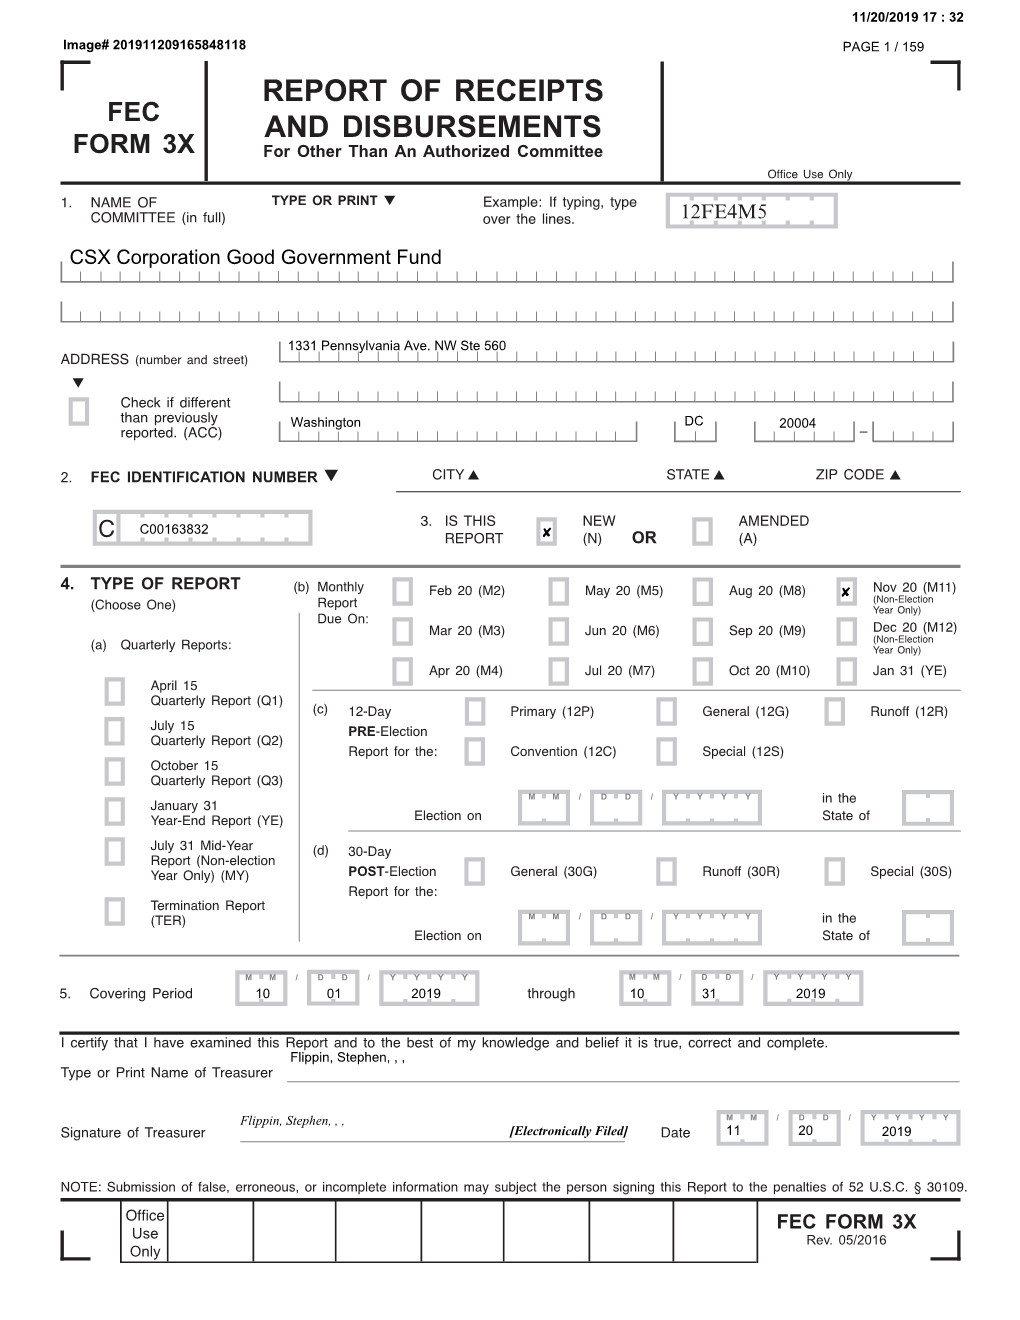 Fec Form 3X Report of Receipts and Disbursements